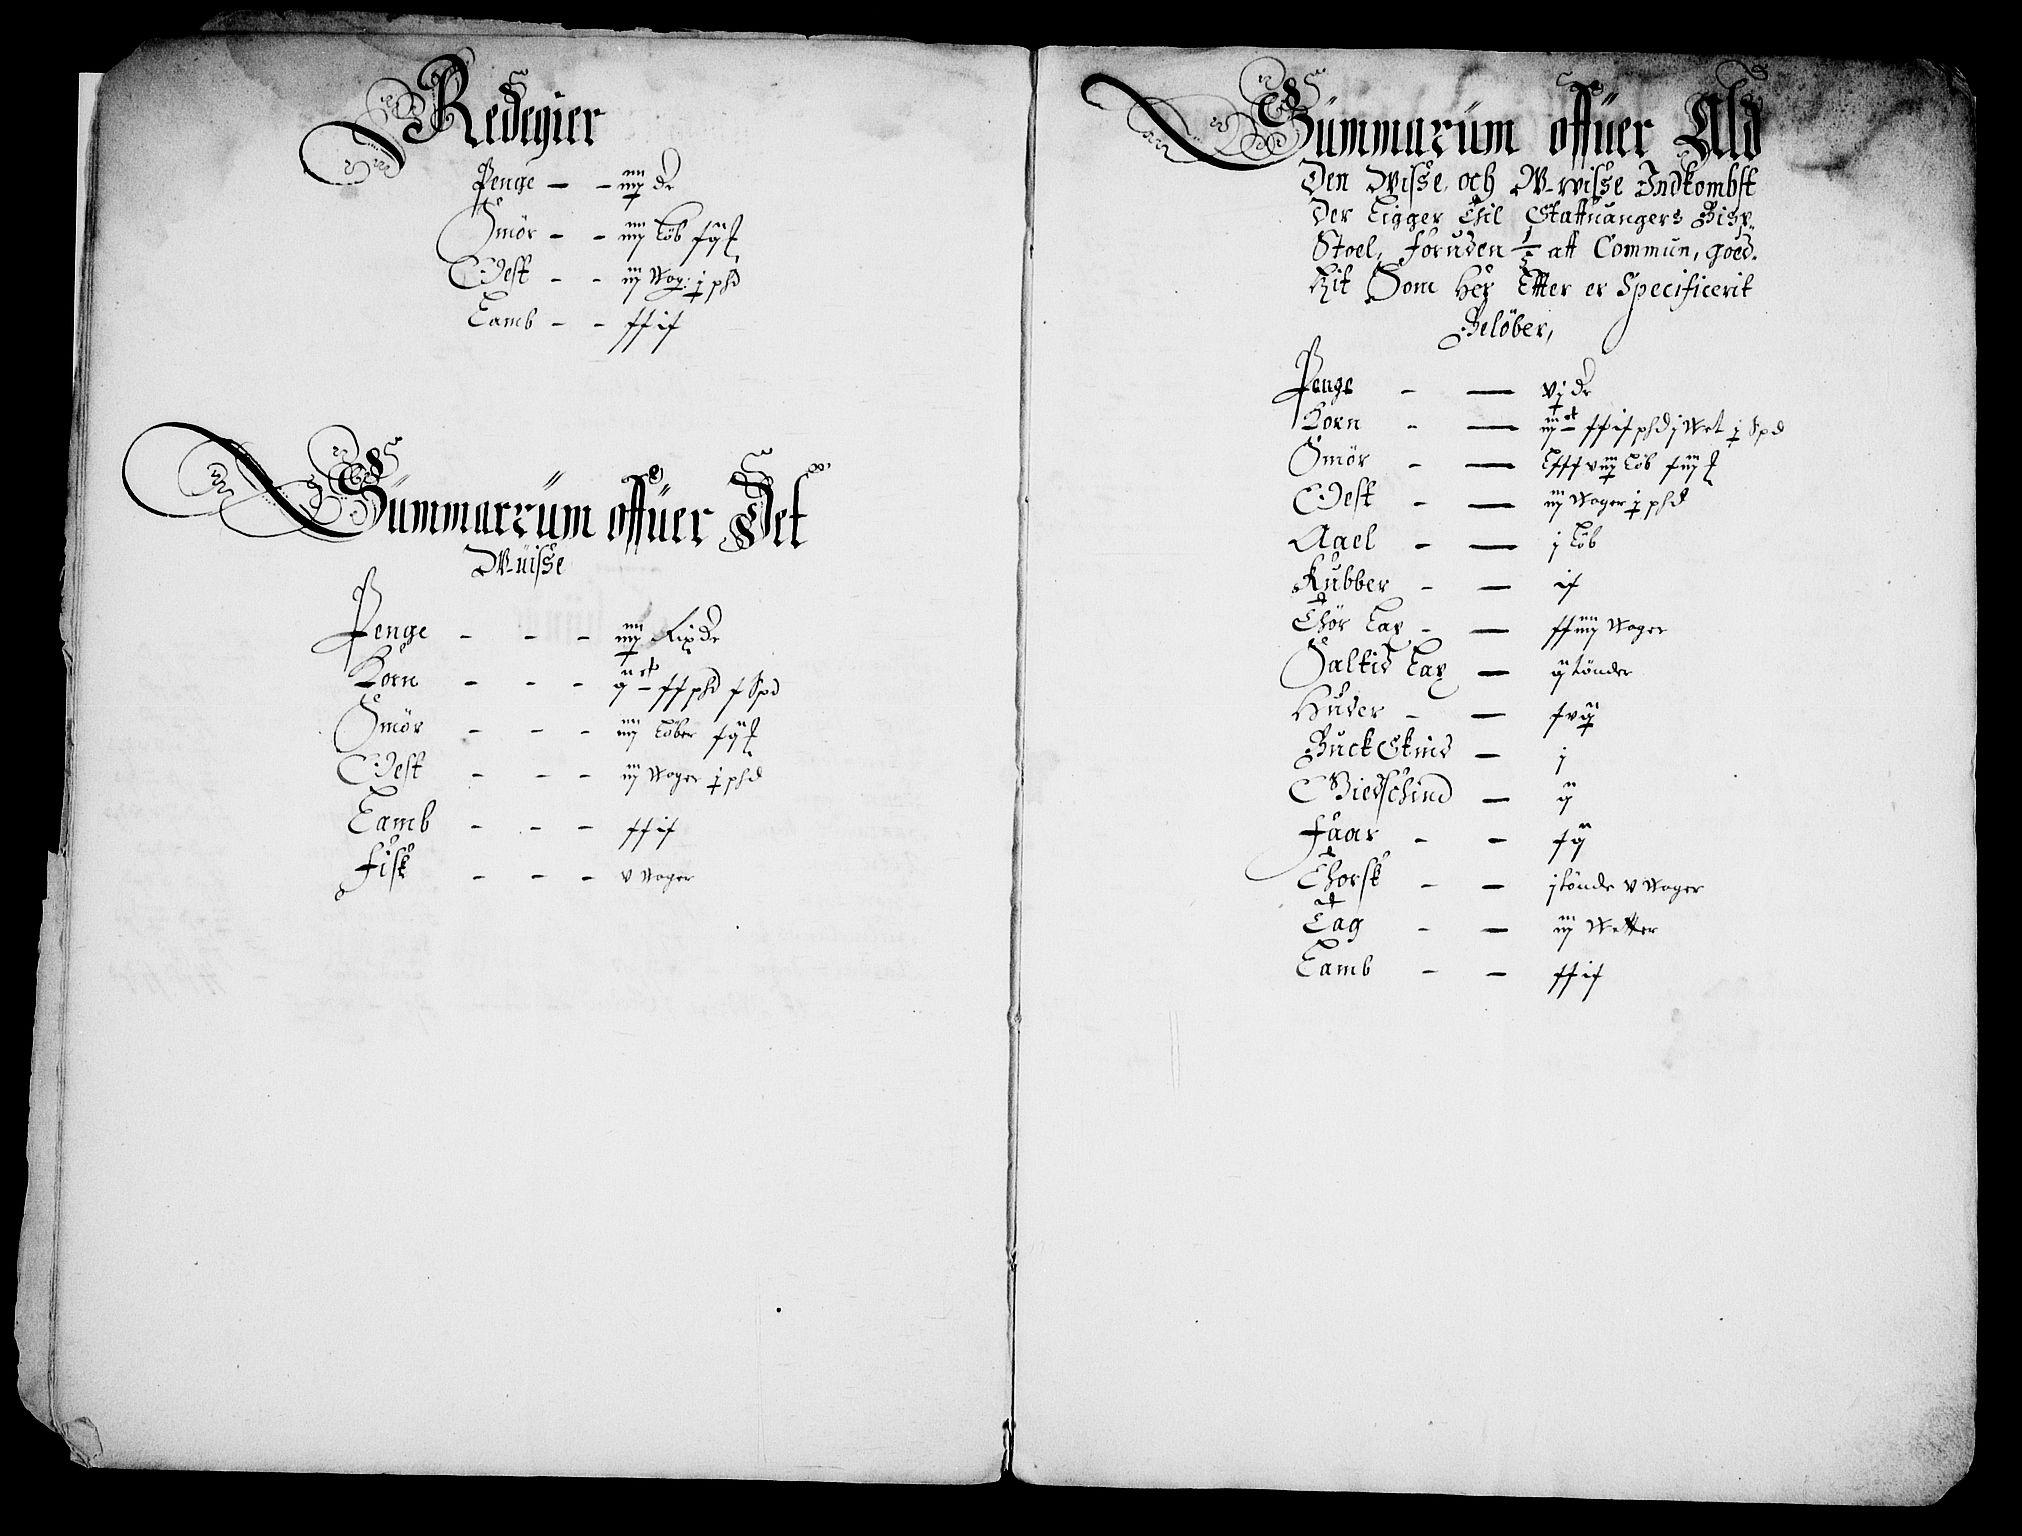 Rentekammeret inntil 1814, Realistisk ordnet avdeling, RA/EA-4070/Fc/Fca/L0002/0005: [Ca II]  Kristiansand stift / Stavanger kapitels jordebok, 1662